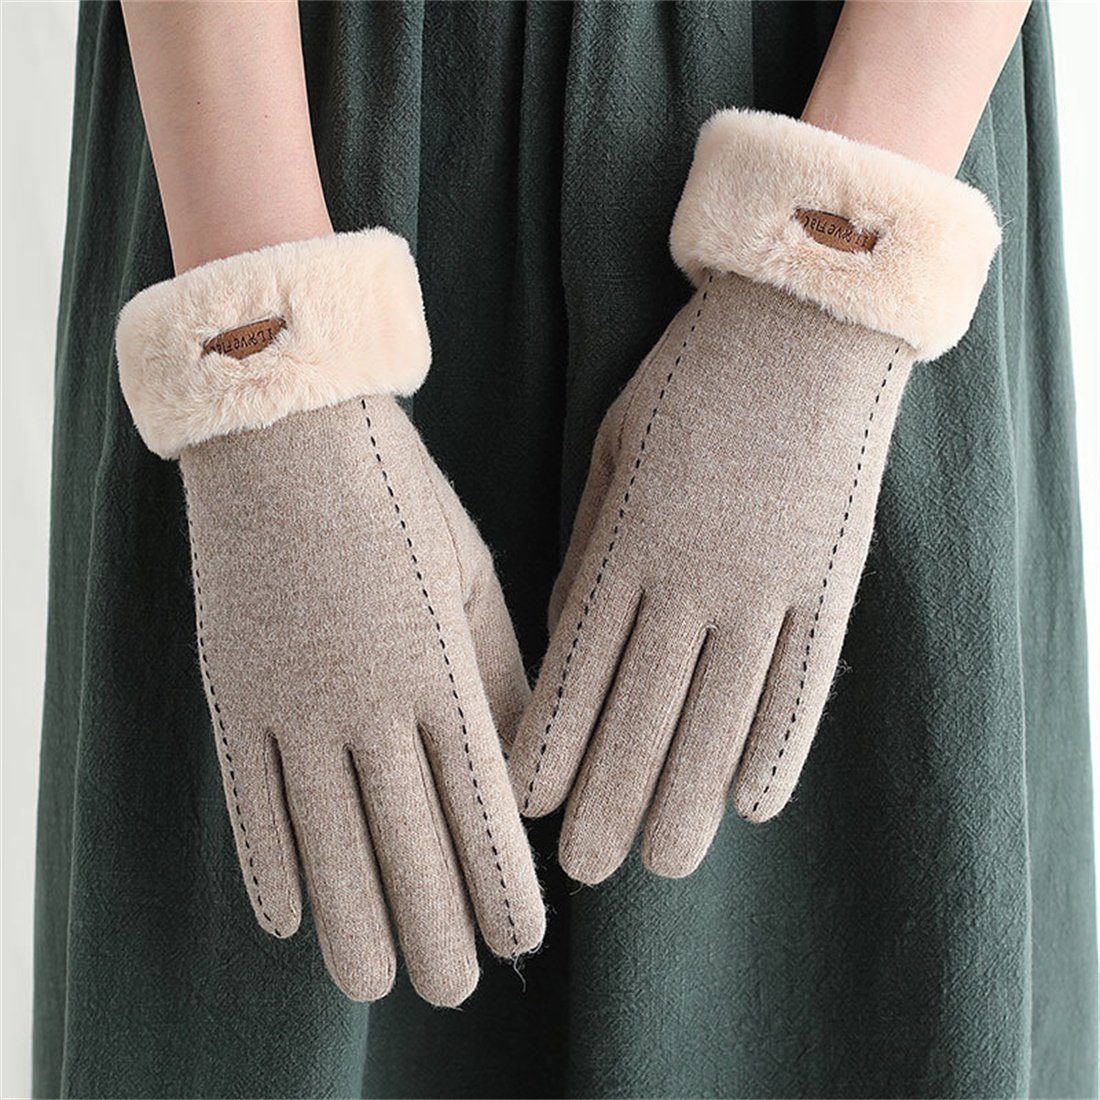 DÖRÖY Fleecehandschuhe Damen Winter Cashmere khaki Touchscreen Handschuhe Reithandschuhe,Faux Warme